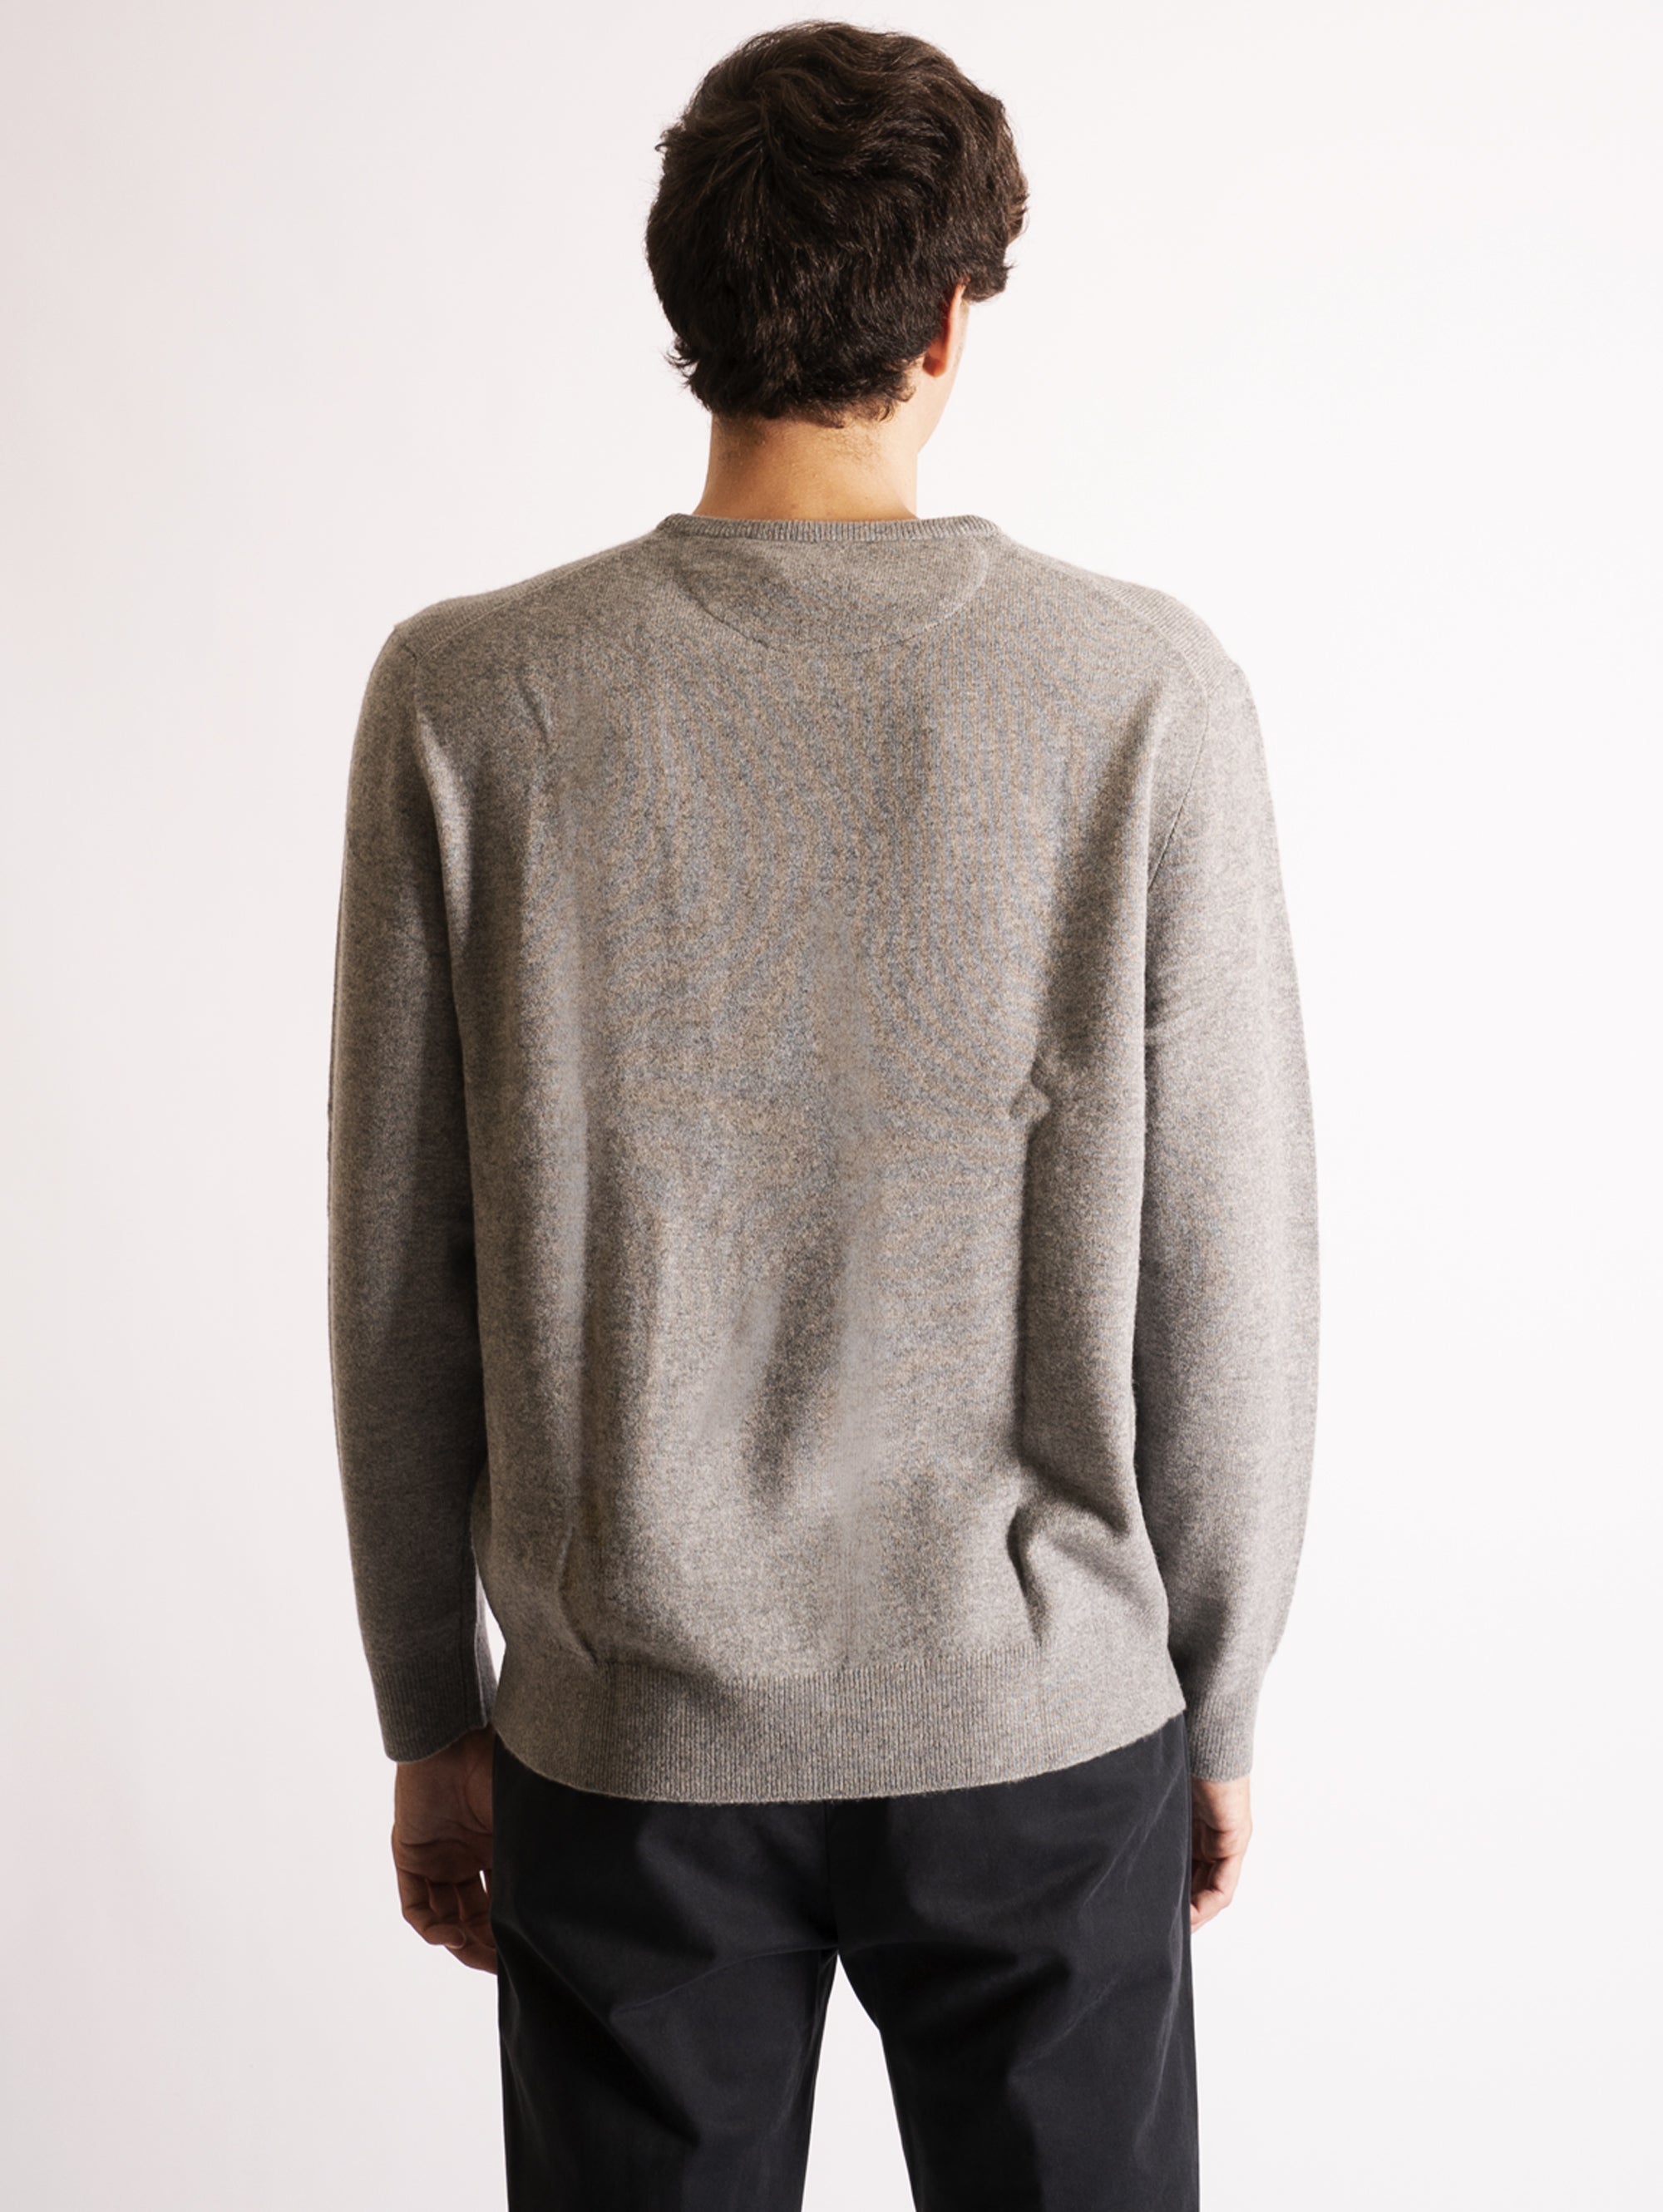 Crewneck Sweater in Gray Wool